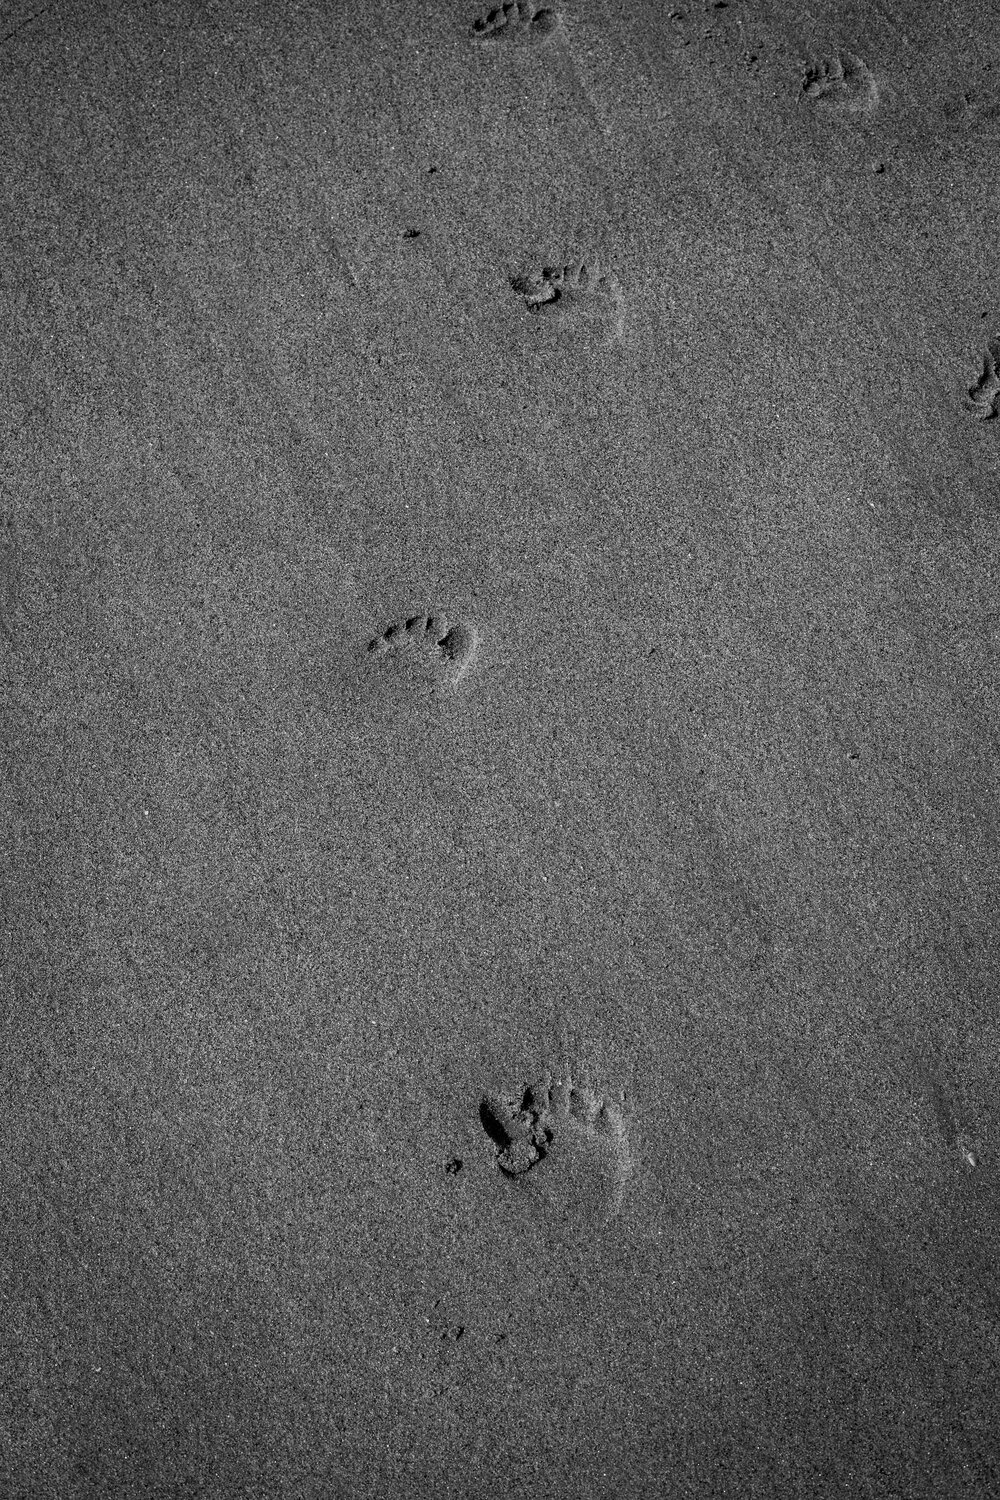 Little footprints